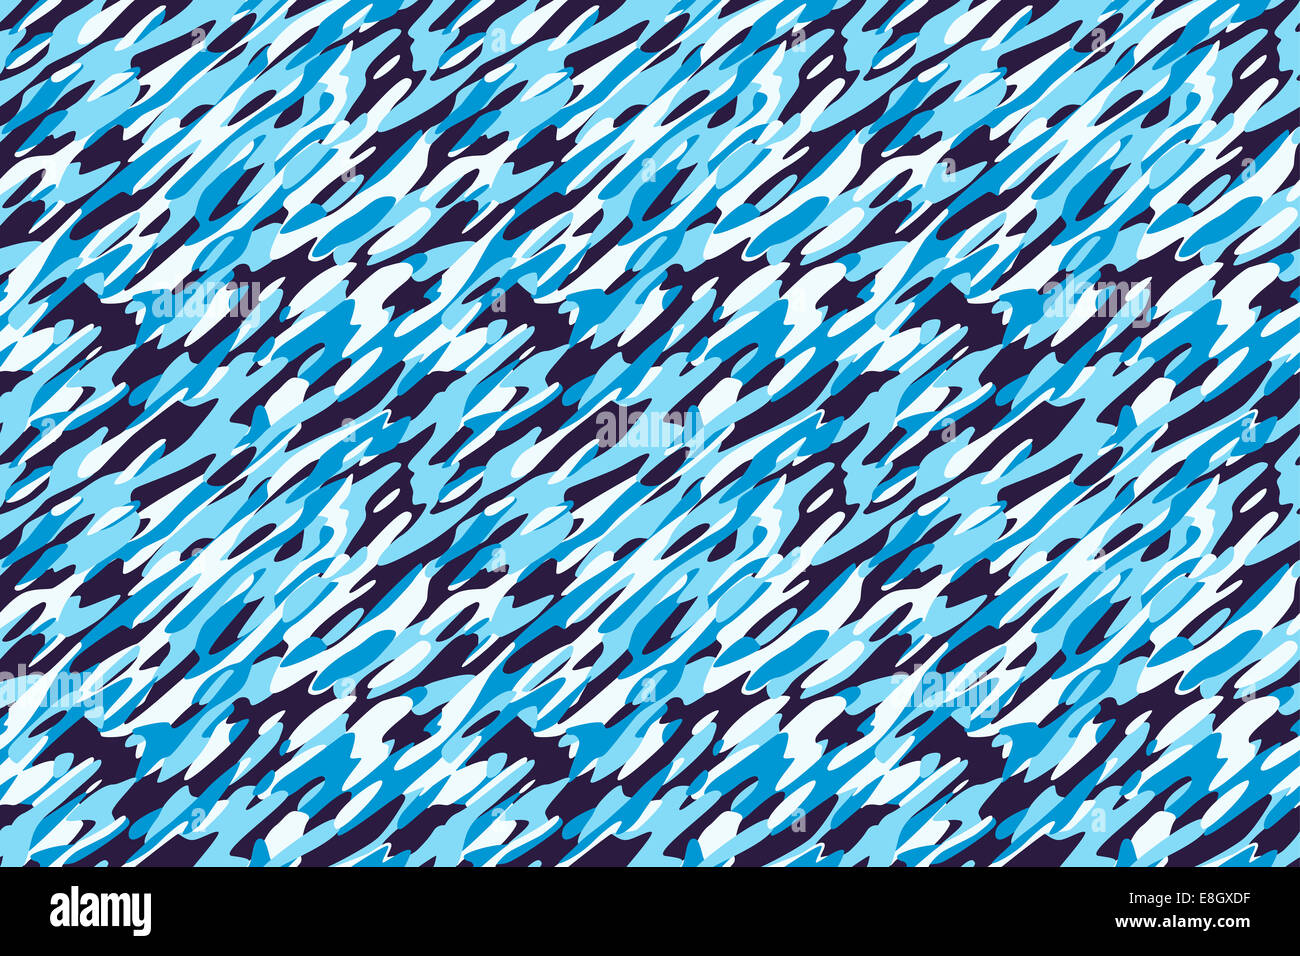 Hiver Neige Camouflage Bleu Fond blanc - textile pattern camouflage militaire. Toutes les parties s'emboîtent parfaitement ensemble homogène. Banque D'Images